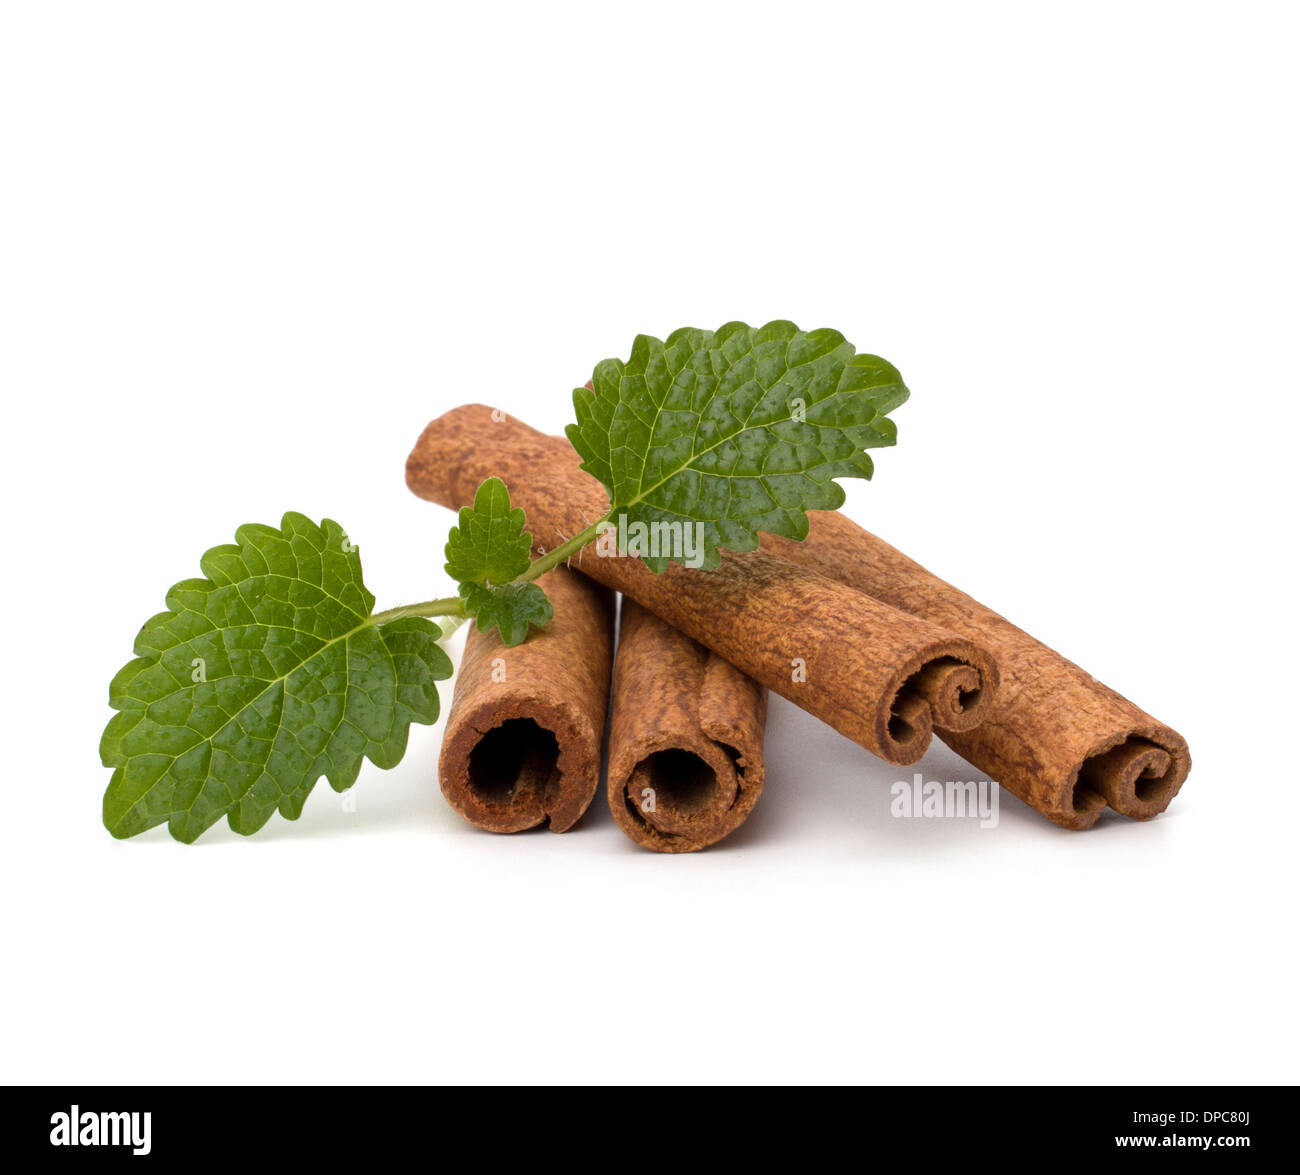 Cinnamon sticks and fresh bergamot mint leaf isolated on white background Stock Photo